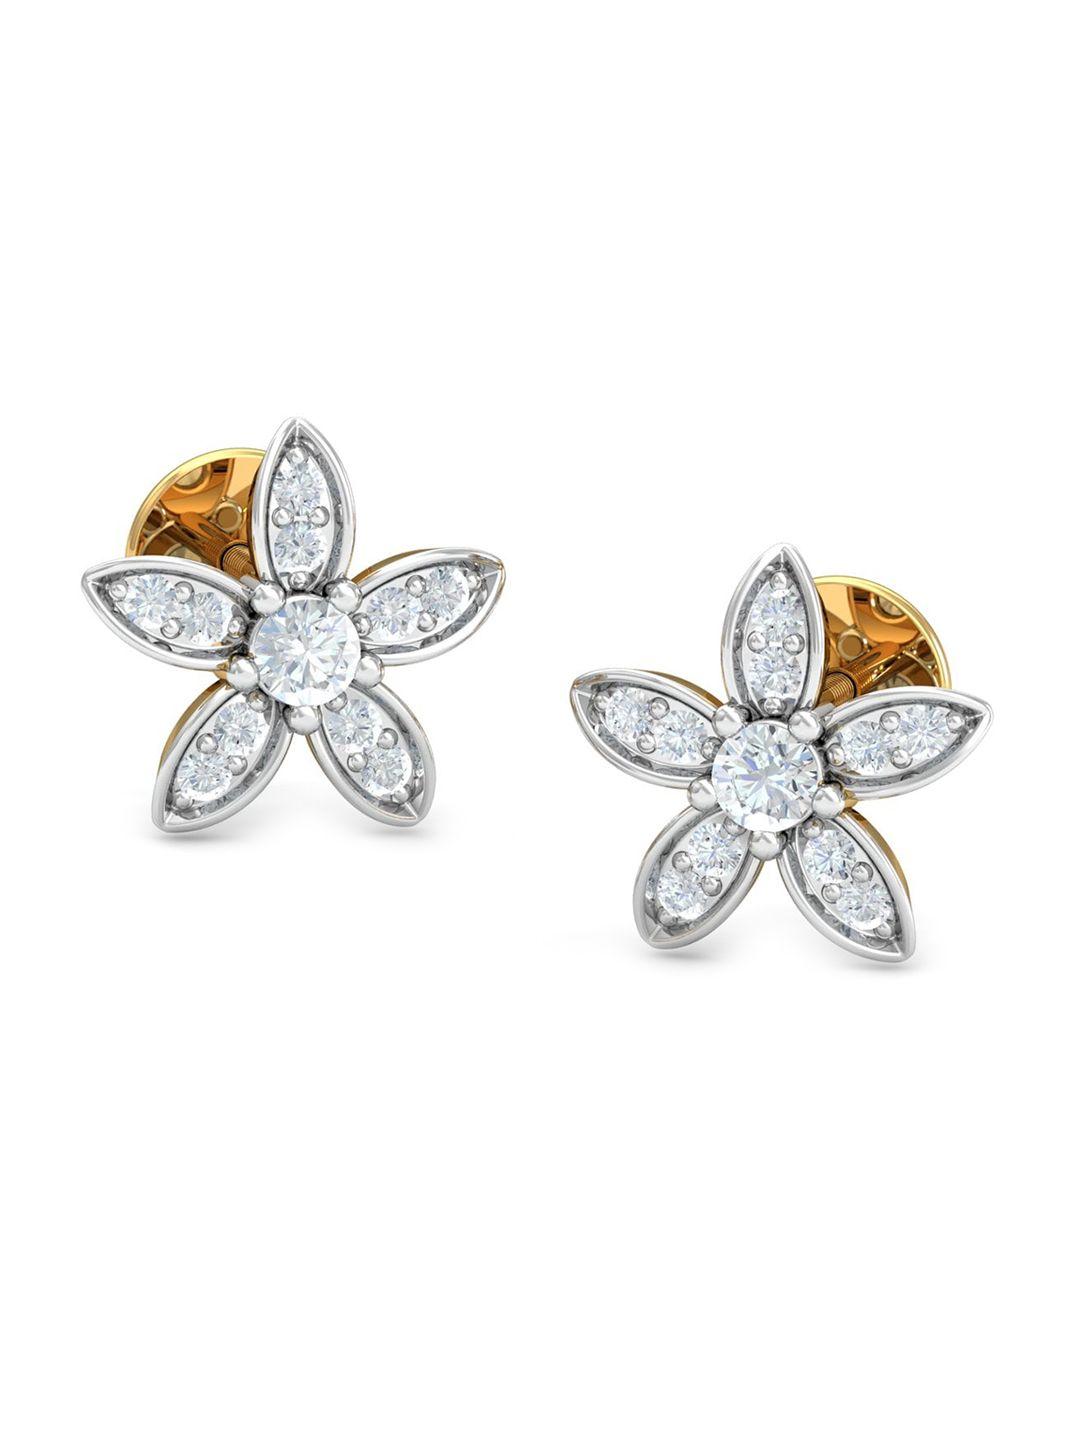 kuberbox 18k gold diamond studded earrings - 1.76g